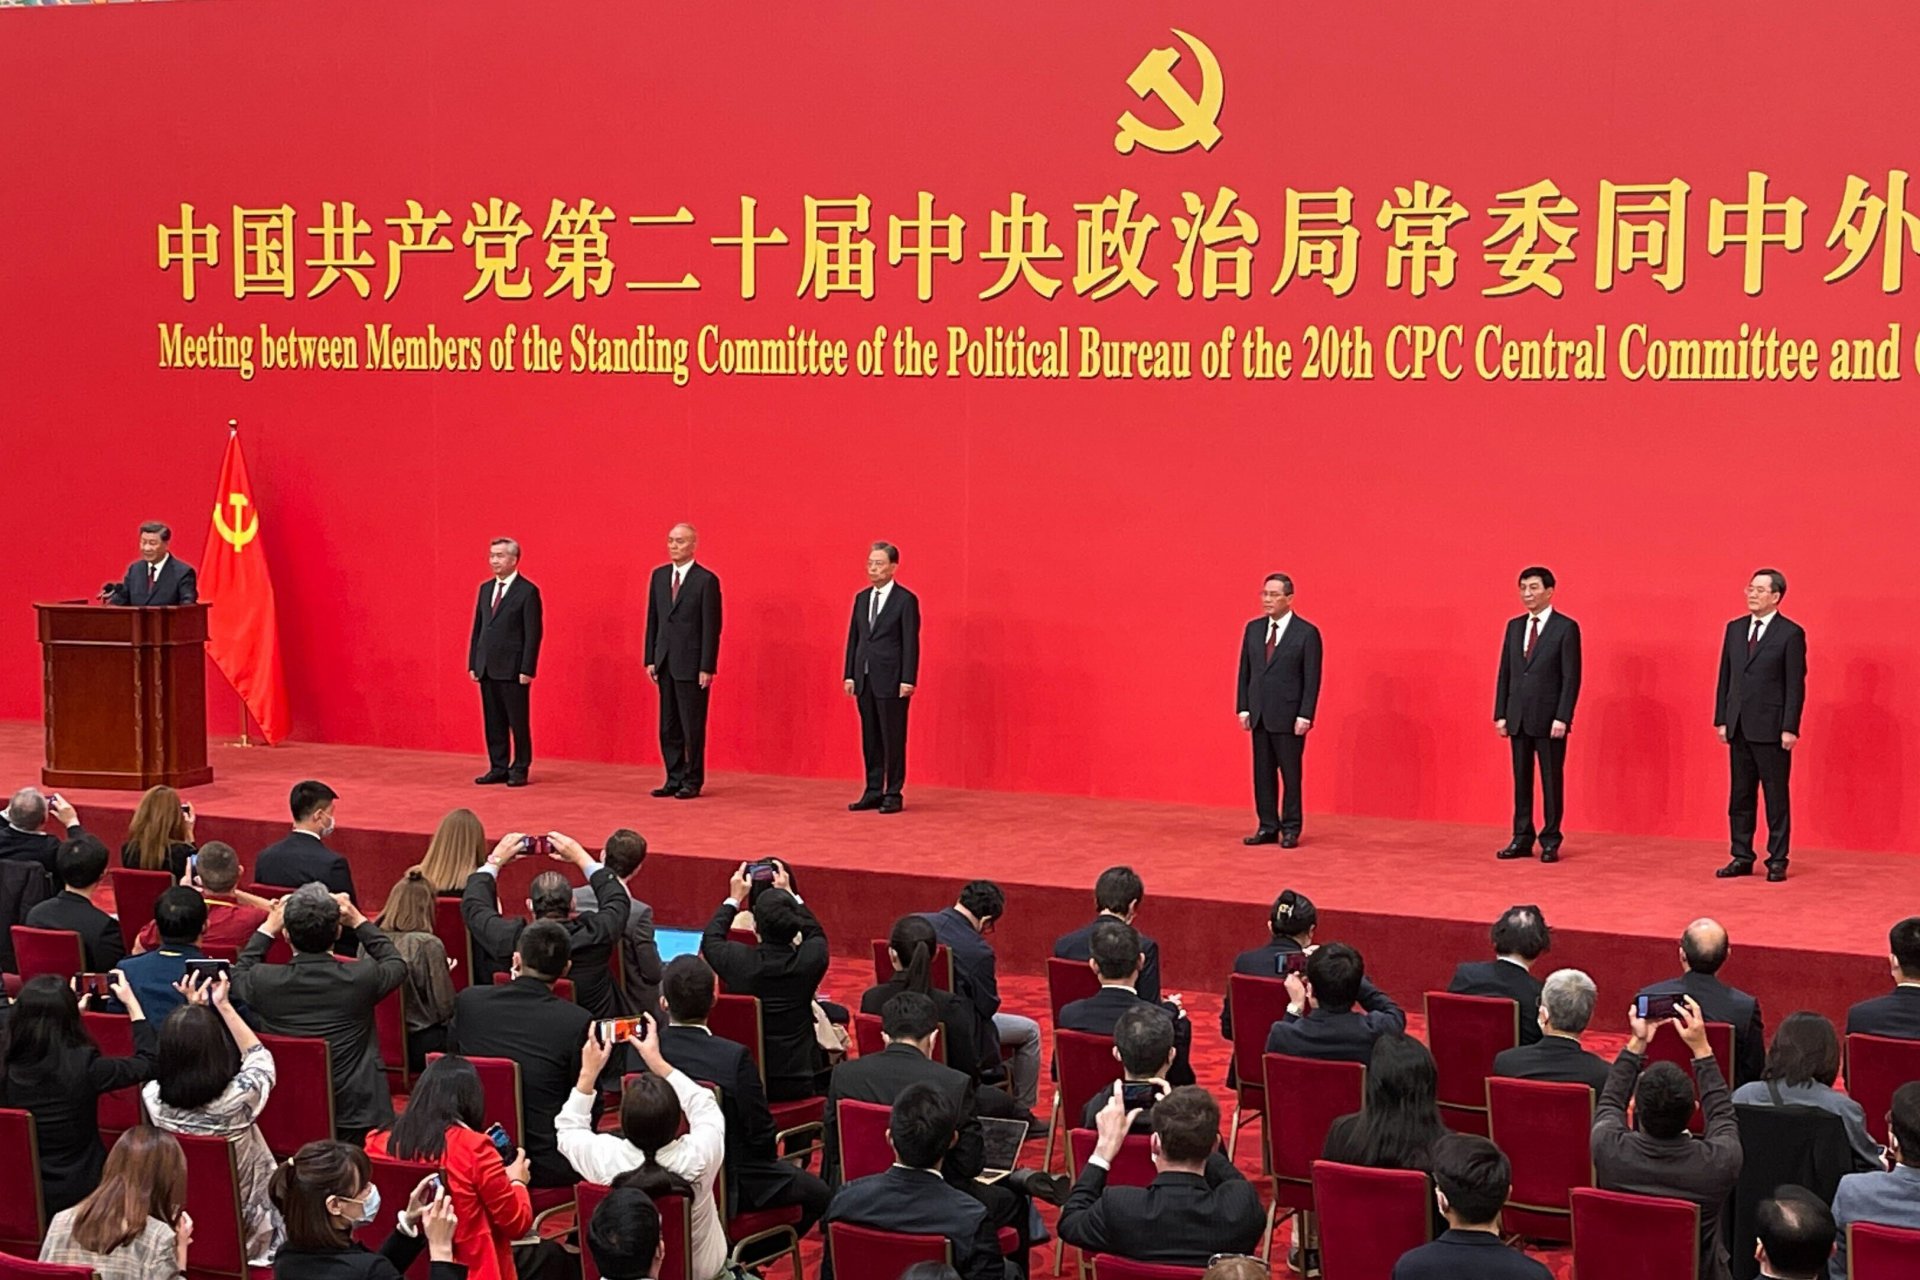 Седемте членове на Постоянния комитет на Политбюро на Китайската комунистическа партия, на трибуната е лидерът Си Дзинпин 